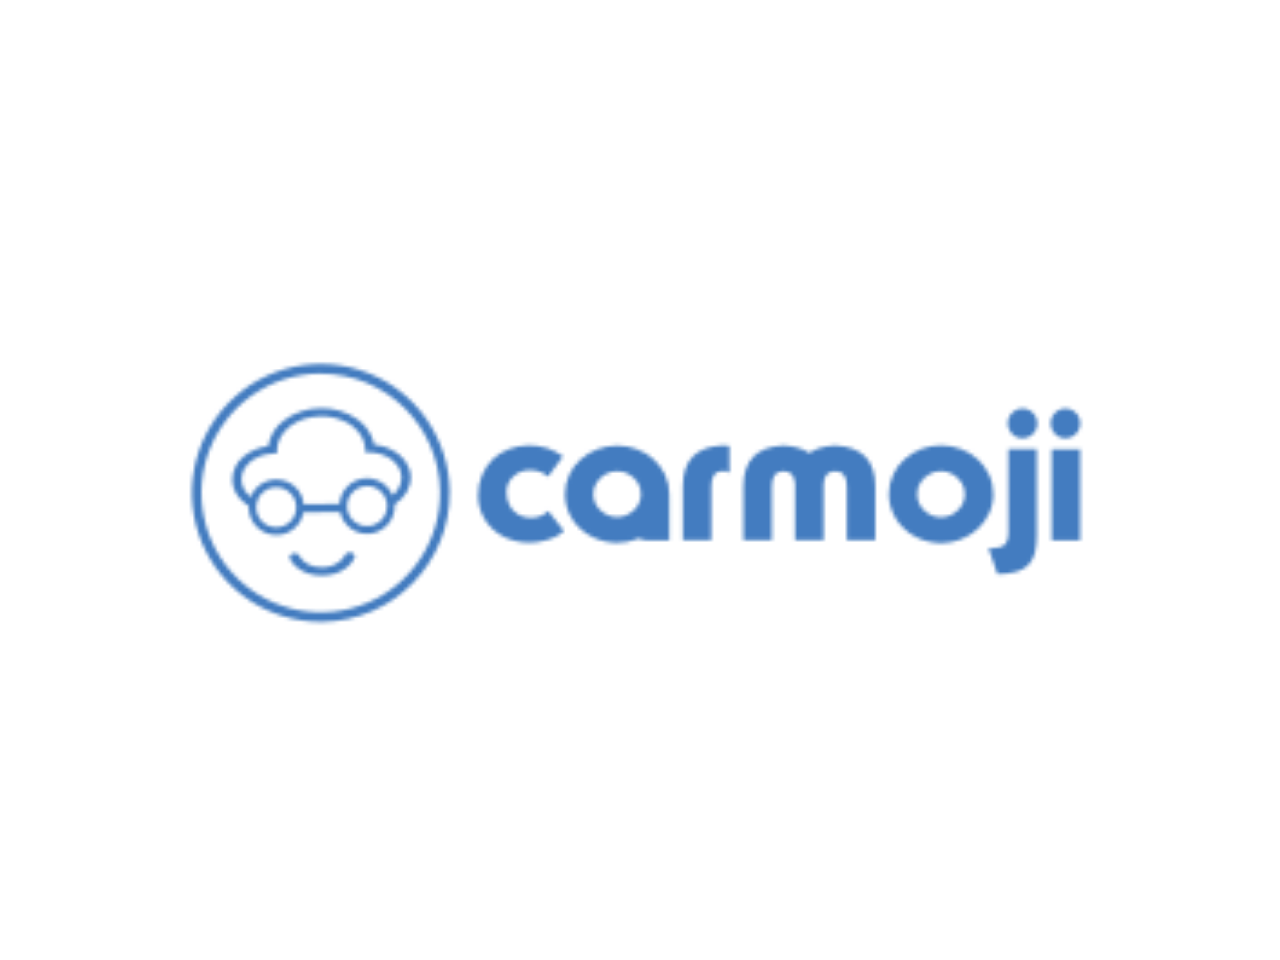 Carmoji Review